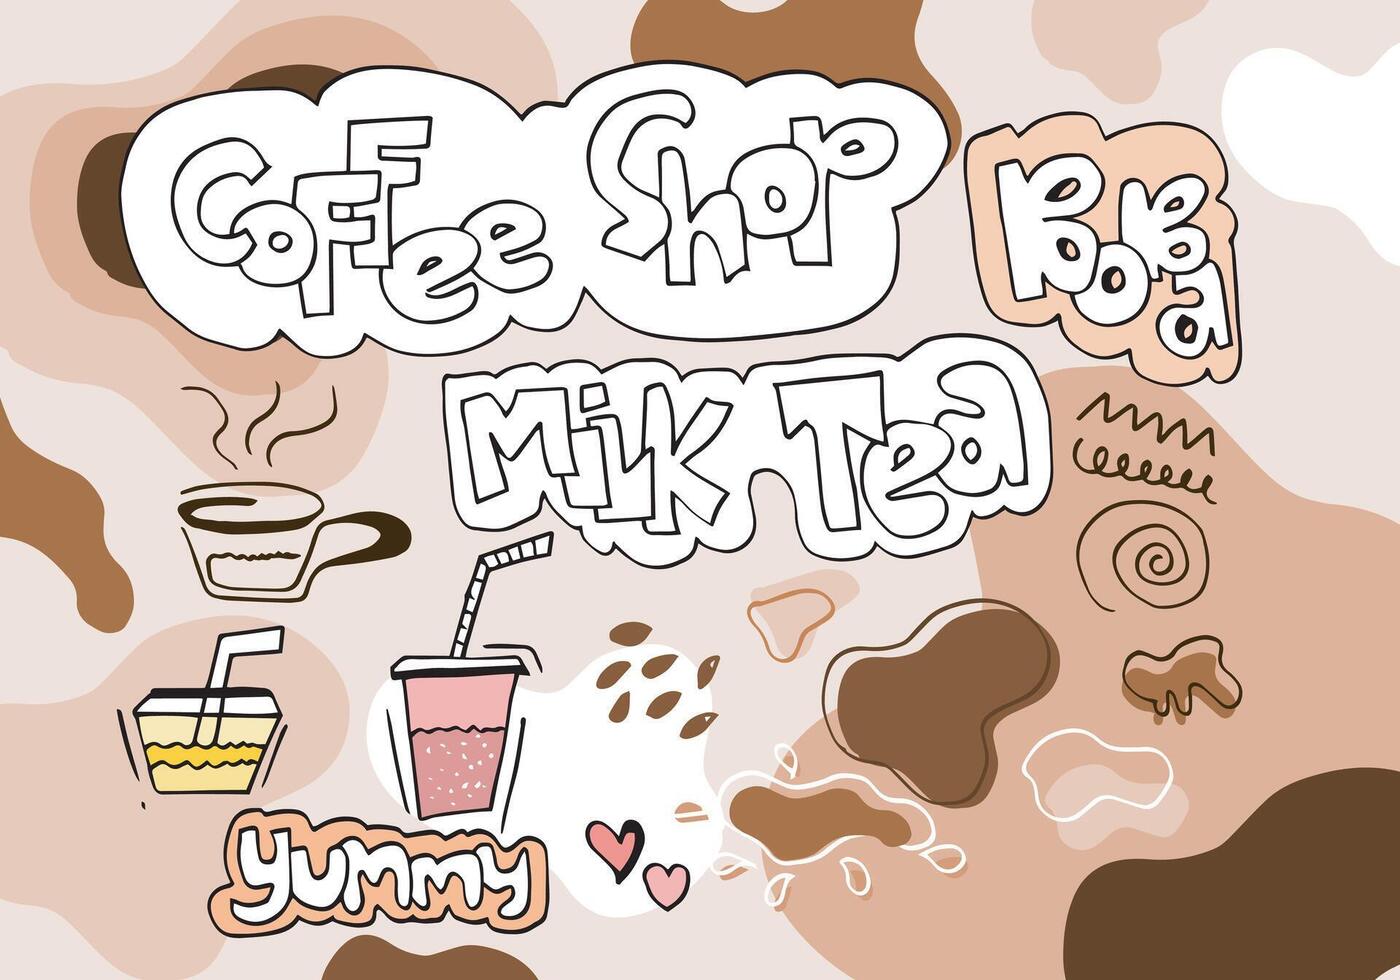 design de promoções especiais de chá com leite bolha, chá com leite boba, chá com leite de pérola, bebidas saborosas, cafés e refrigerantes com logotipo e banner de anúncio de estilo doodle. ilustração vetorial. vetor